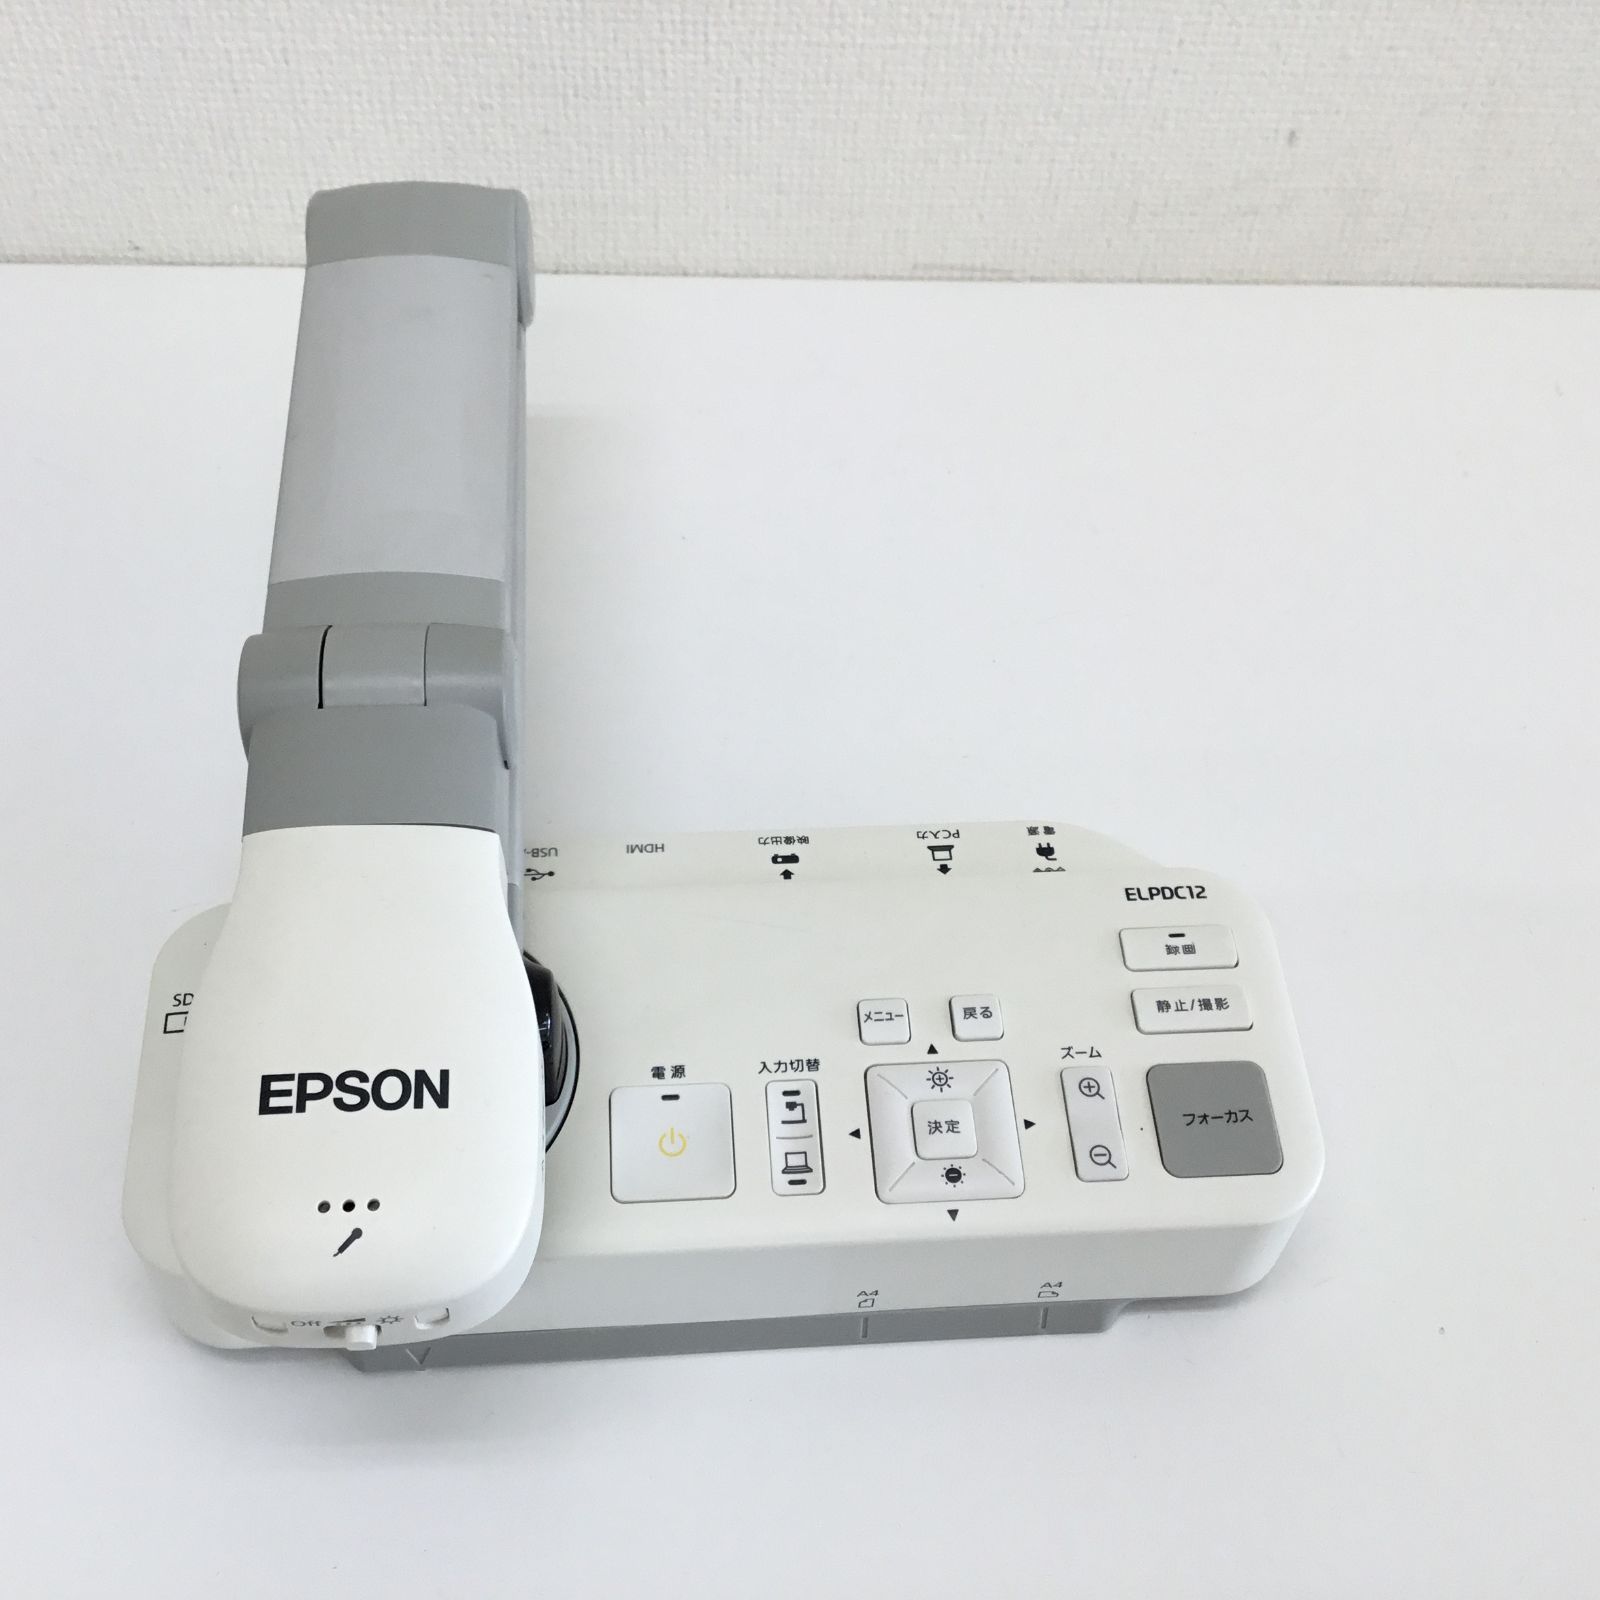 EPSON プロジェクター ELPDC12 ポータブル書画カメラ - 4